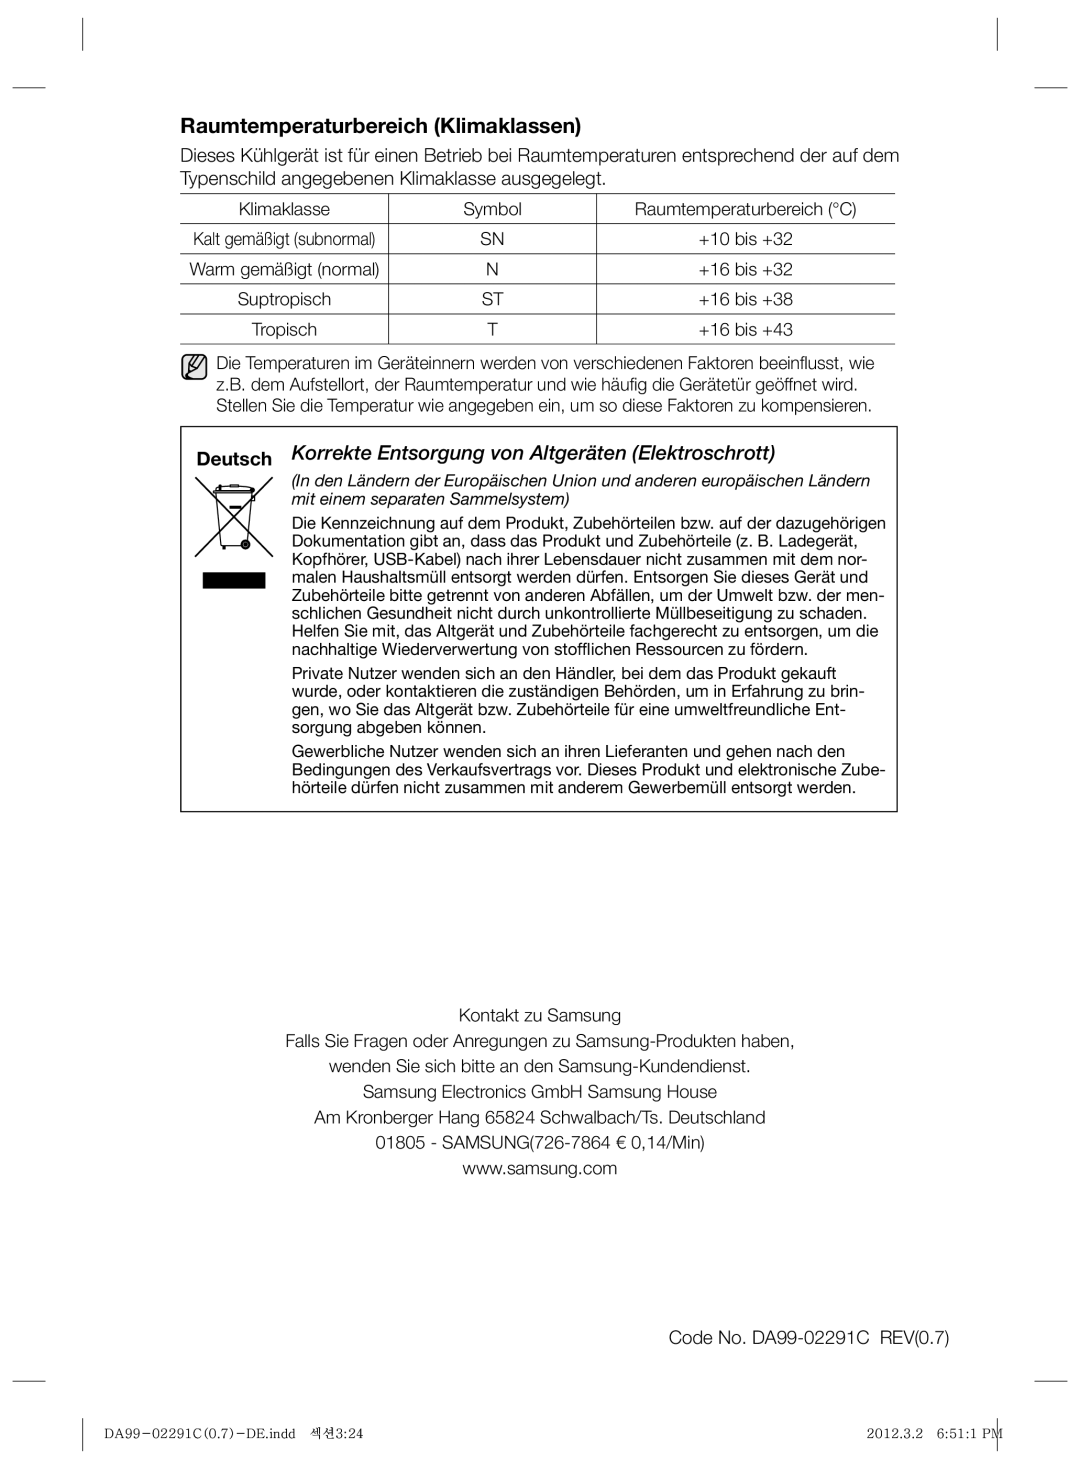 Samsung RSH7ZNRS1/XEG manual Raumtemperaturbereich Klimaklassen, Deutsch Korrekte Entsorgung von Altgeräten Elektroschrott 